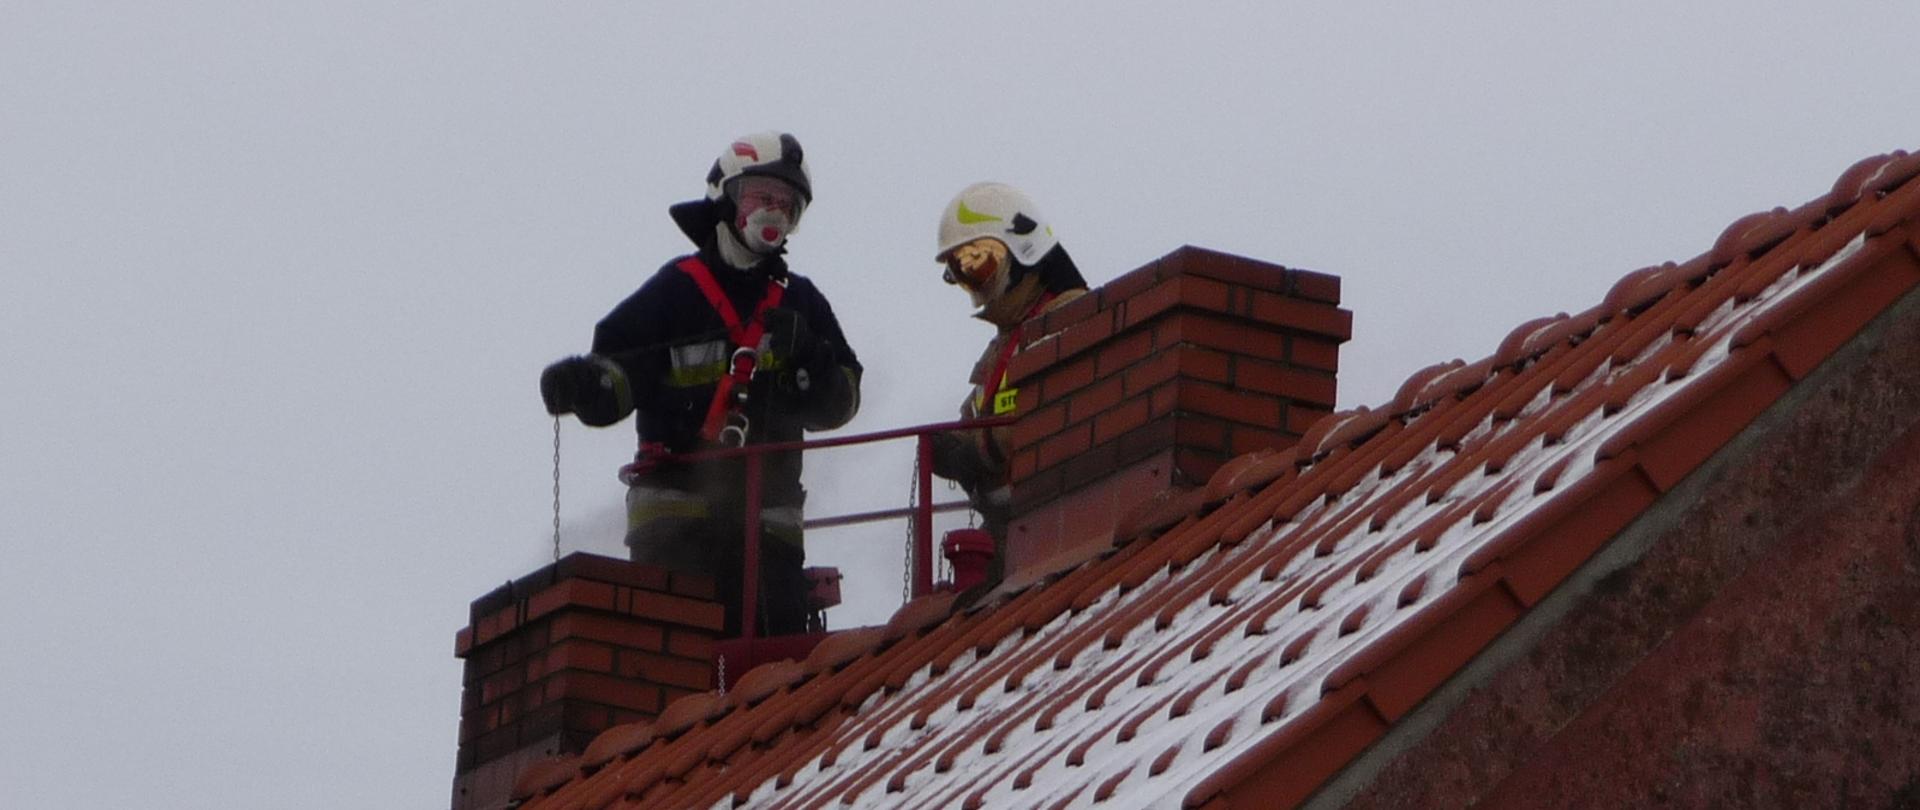 Zdjęcie przedstawia dach budynku jednorodzinnego pokryty pomarańczową dachówką. na dachu znajdują się dwa kominy, jeden z nich pali się. Na dachu znajduje się dwóch strażaków, którzy czyszczą przewód kominowy.